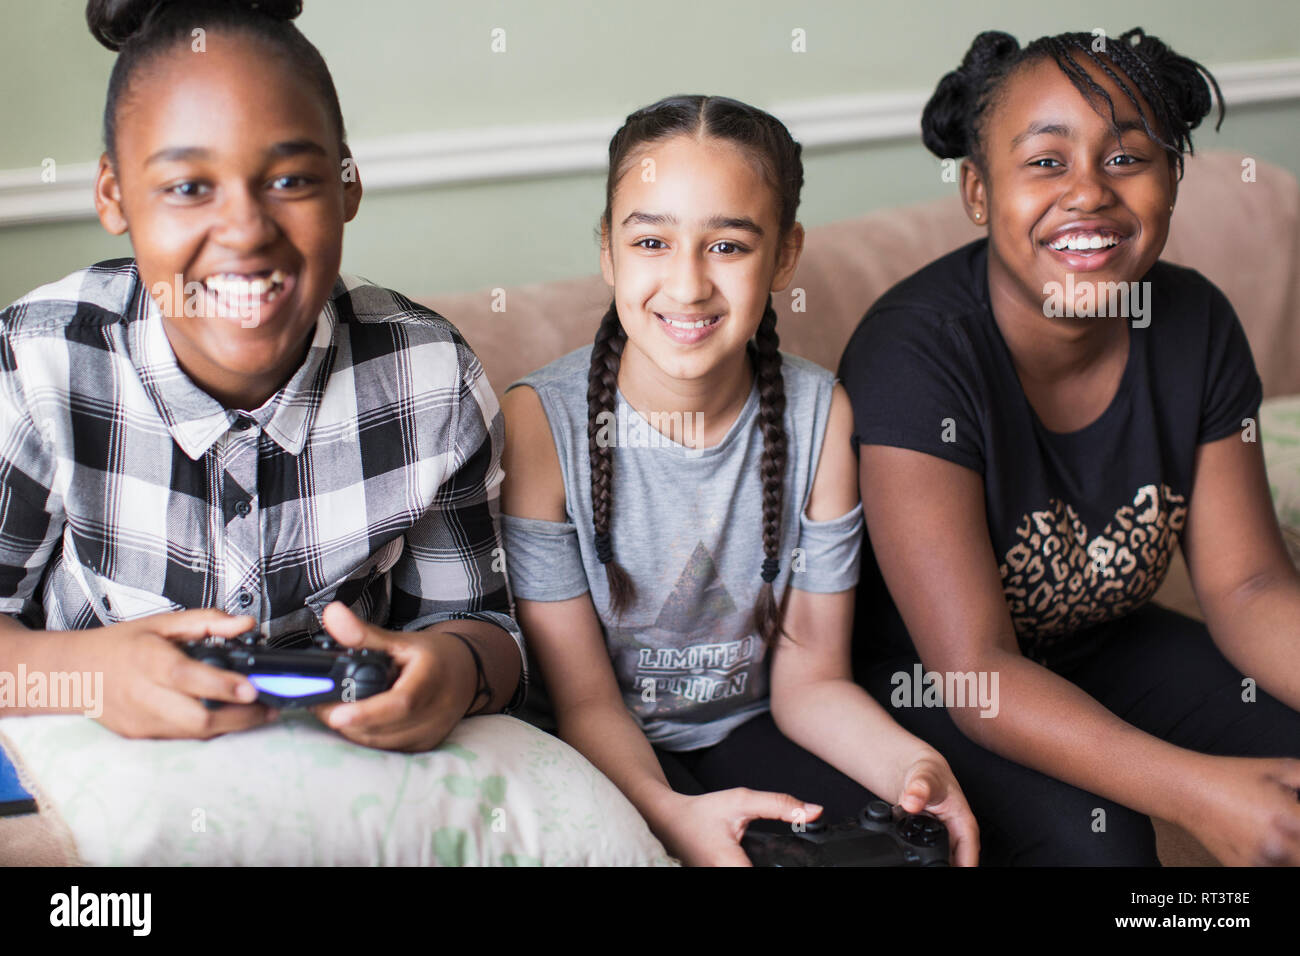 Ritratto sorridente ragazza tween amici la riproduzione del video gioco sul divano Foto Stock